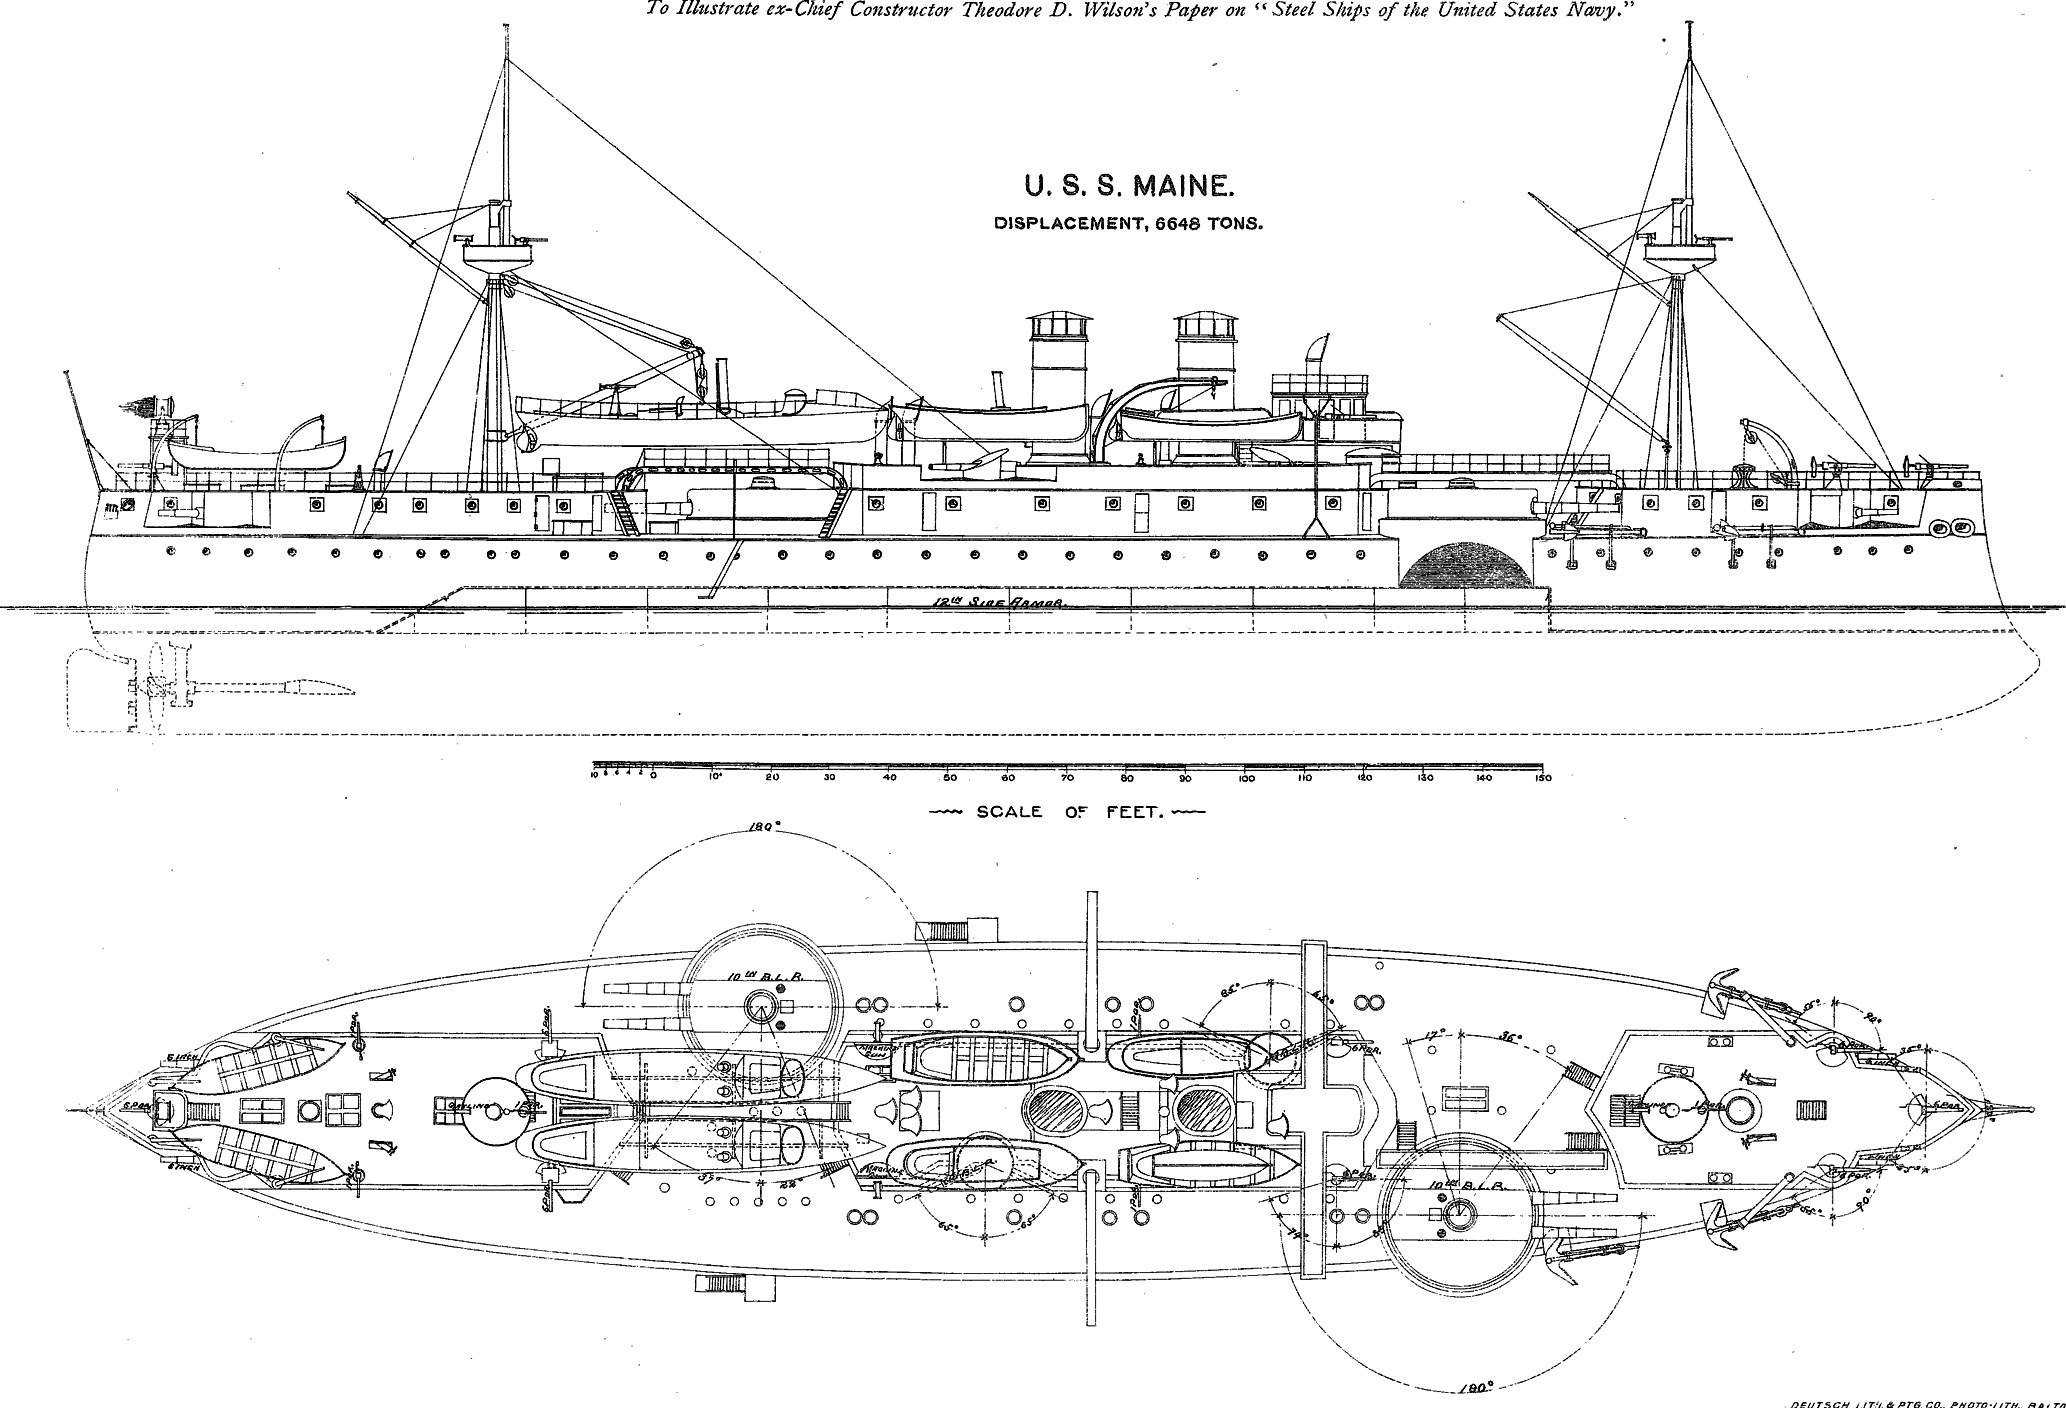 Battleship Photo Index, USS MAINE, 2nd CLASS BATTLESHIP